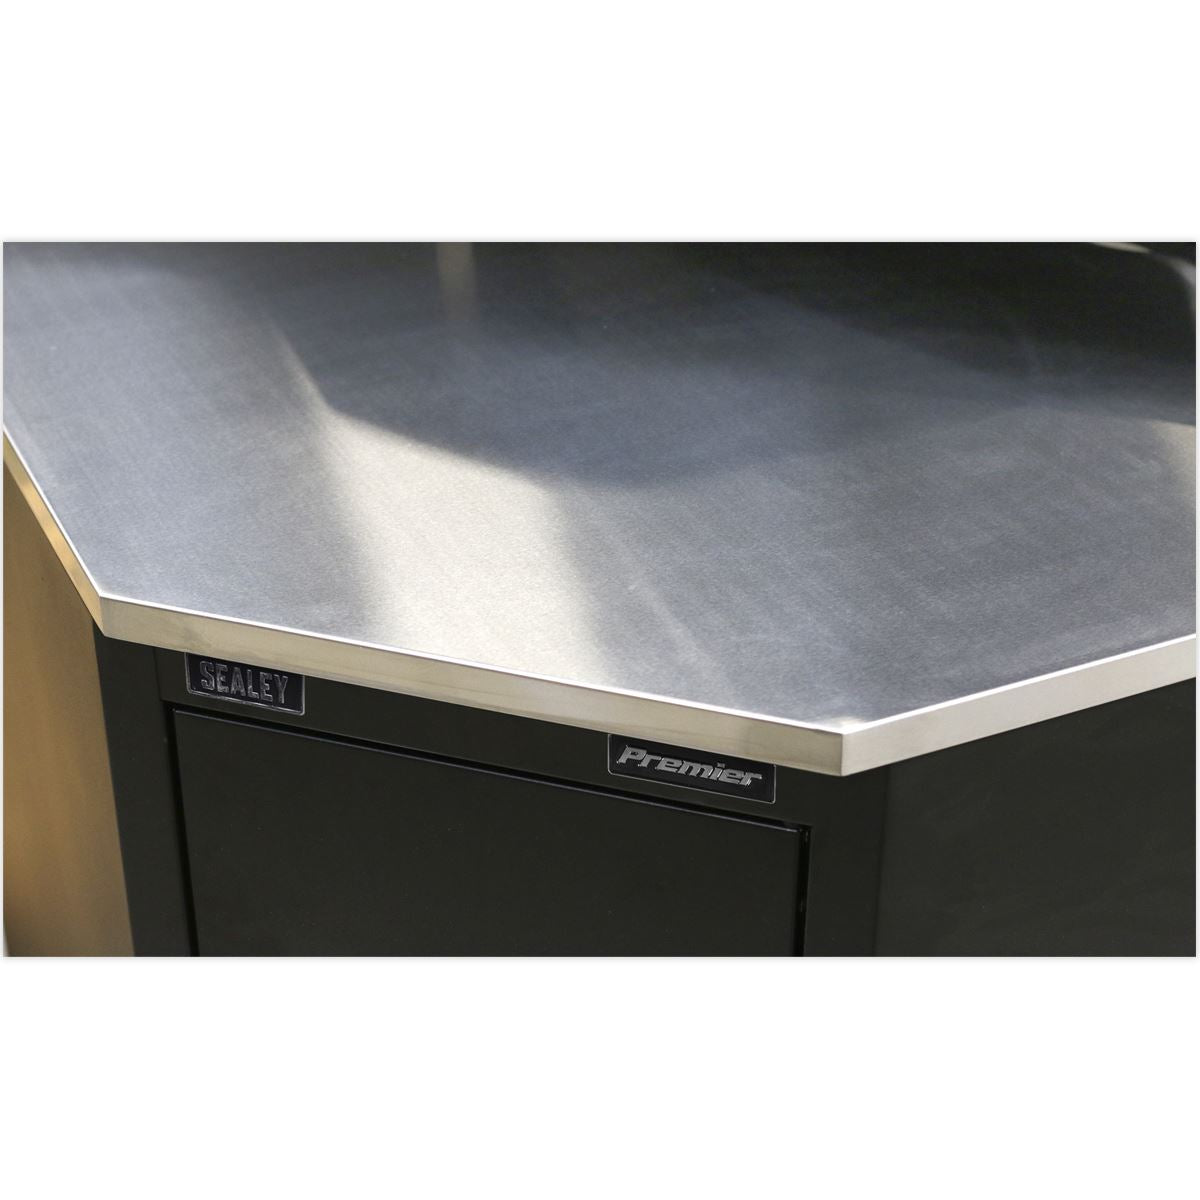 Sealey Premier Stainless Steel Corner Worktop 930mm